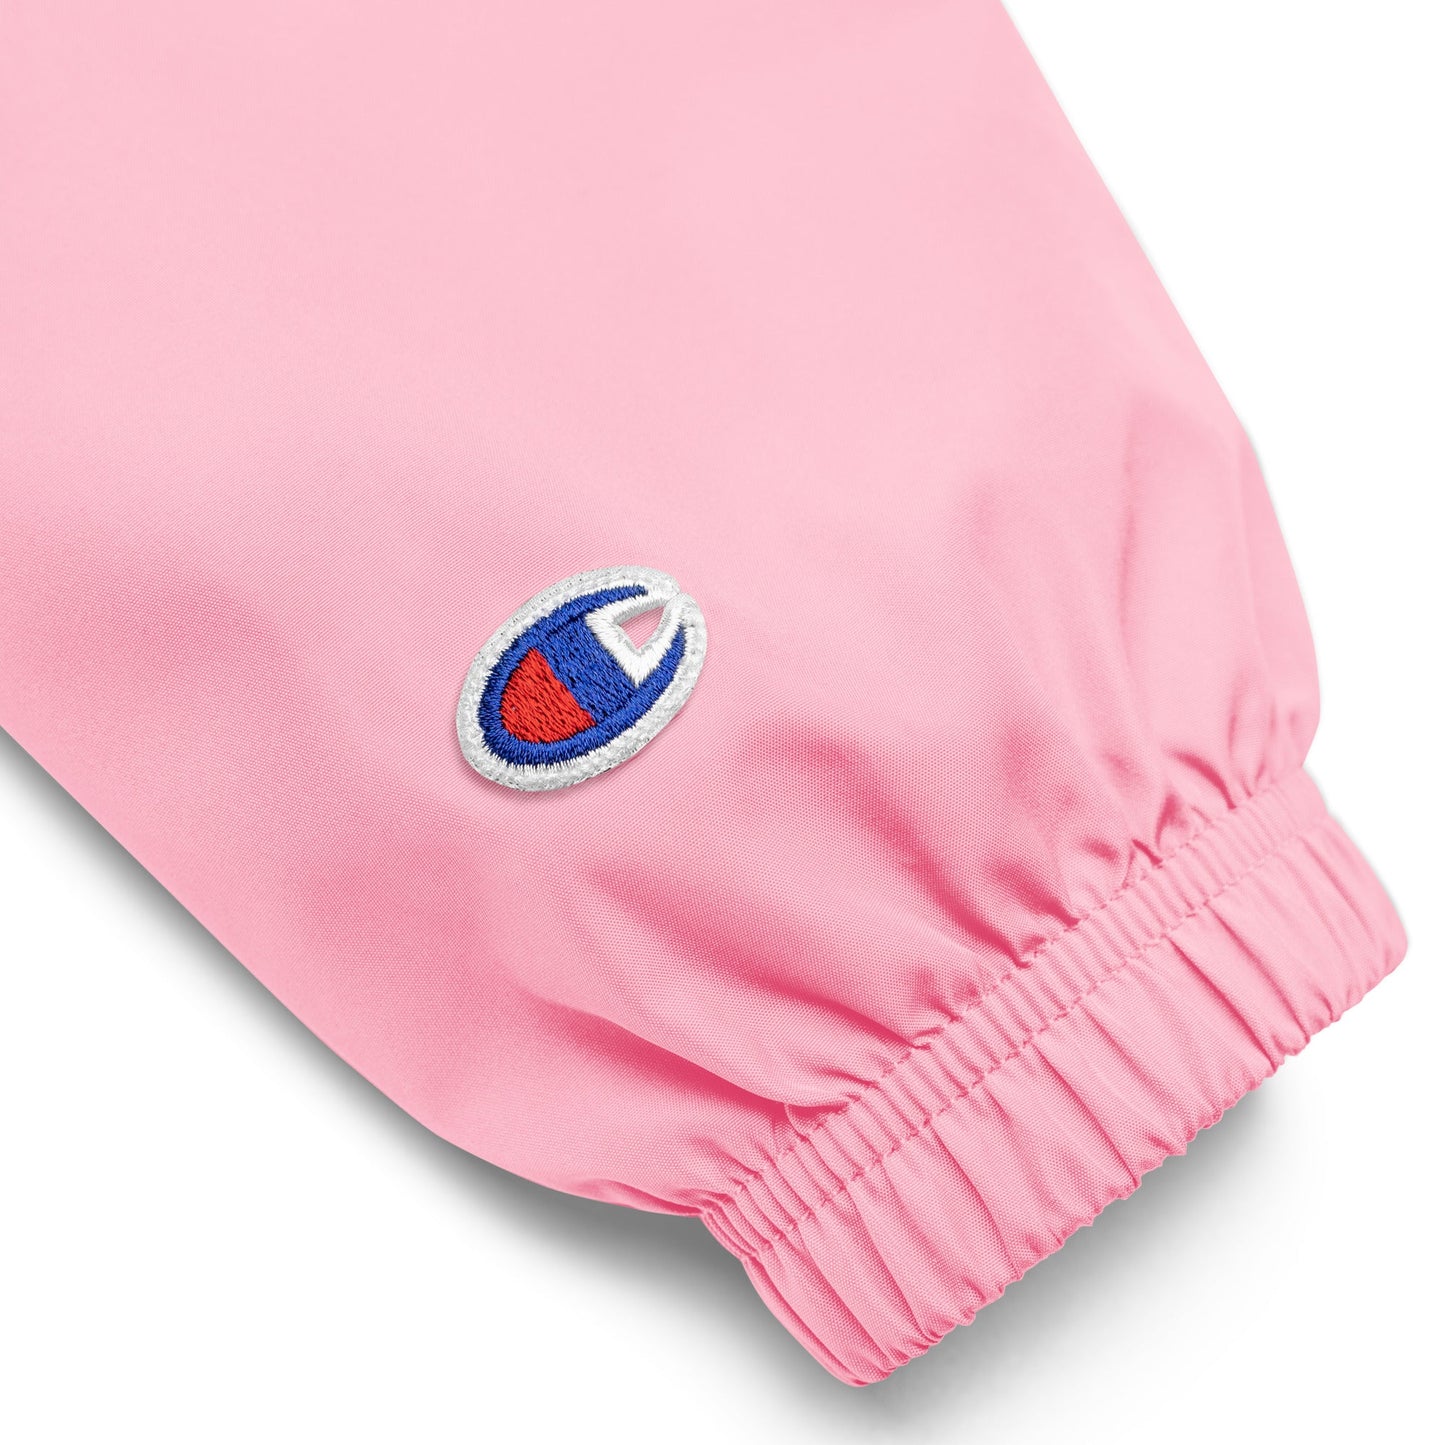 Pink Candy Quarter Zip Hoodie Windbreaker Pullover Jacket - Been Dope Supply